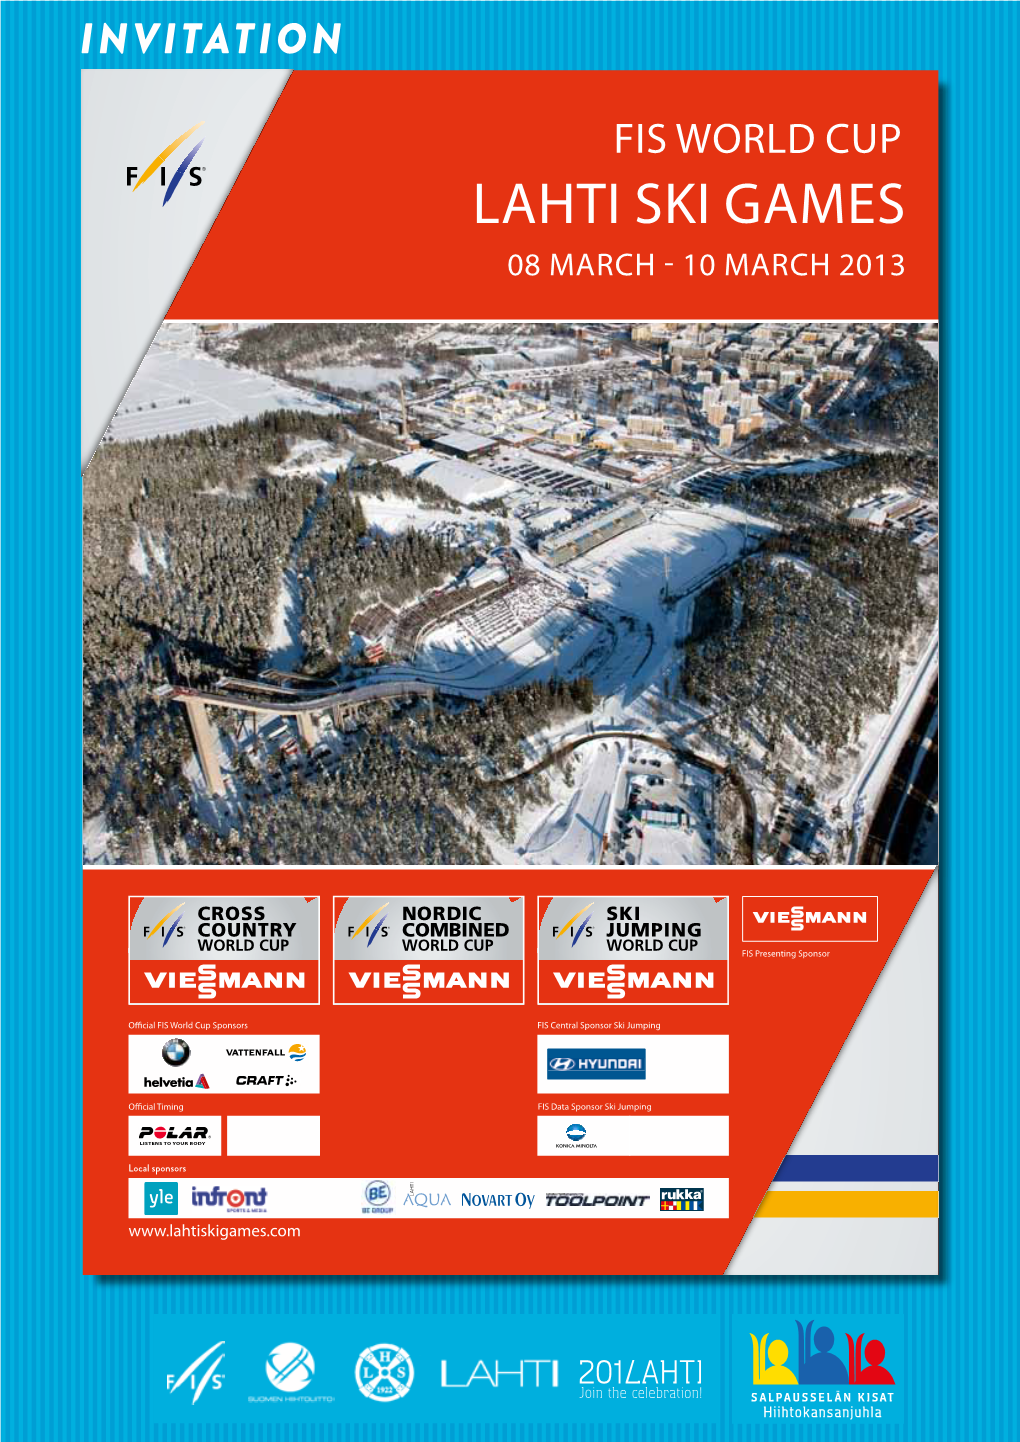 Lahti Ski Games 08 March - 10 March 2013